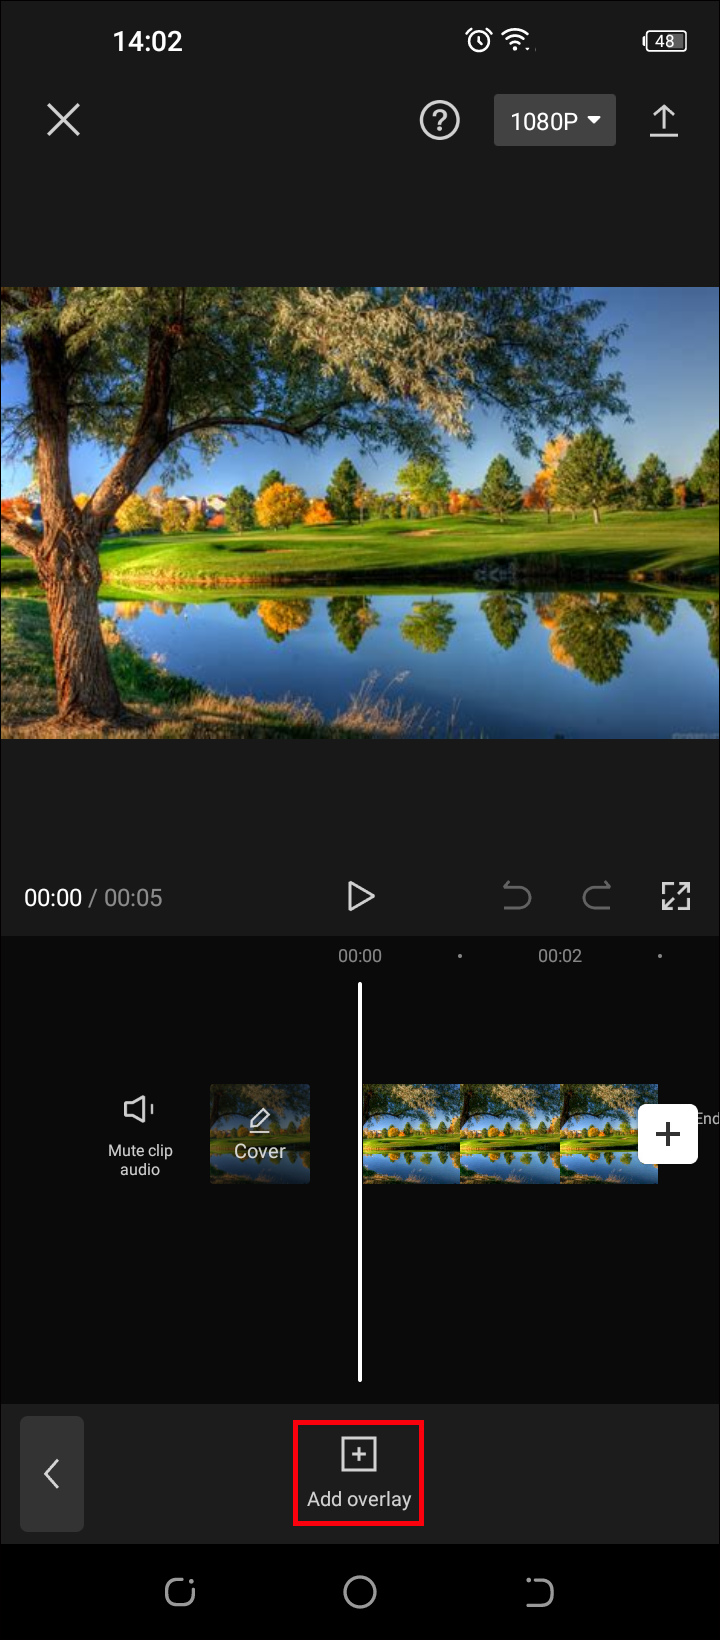 CapCut là ứng dụng chỉnh sửa video cực kỳ thú vị và dễ dàng trên điện thoại của bạn. Hãy khám phá những tính năng tuyệt vời của nó và biến những bức ảnh tẻ nhạt của bạn thành những tác phẩm nghệ thuật đầy màu sắc.